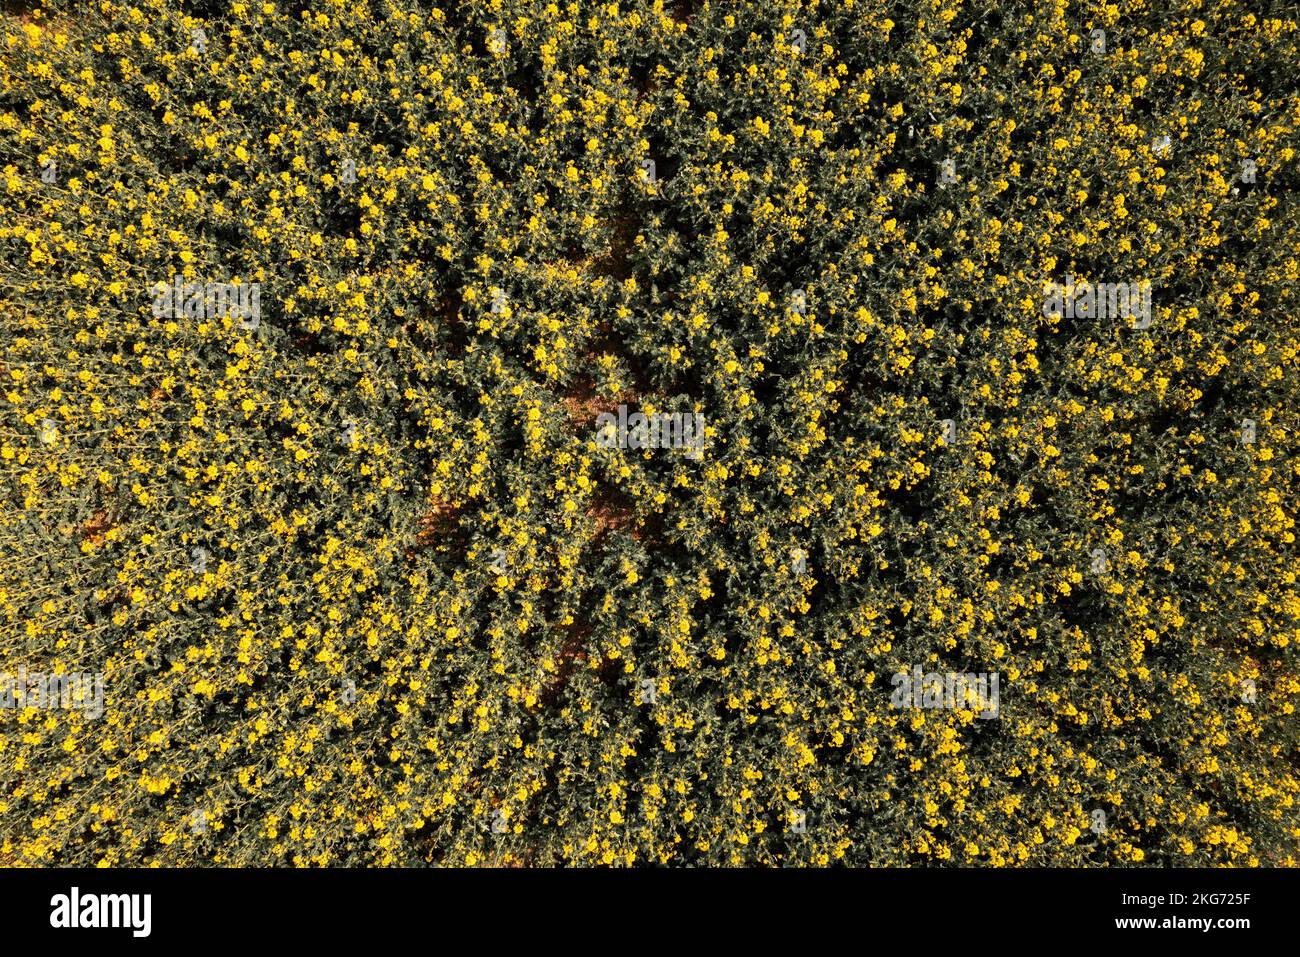 Draufsicht auf gelbe Rapsblumen von Drohne pov. Ölraps wird hauptsächlich für sein ölreiches Saatgut angebaut. Stockfoto